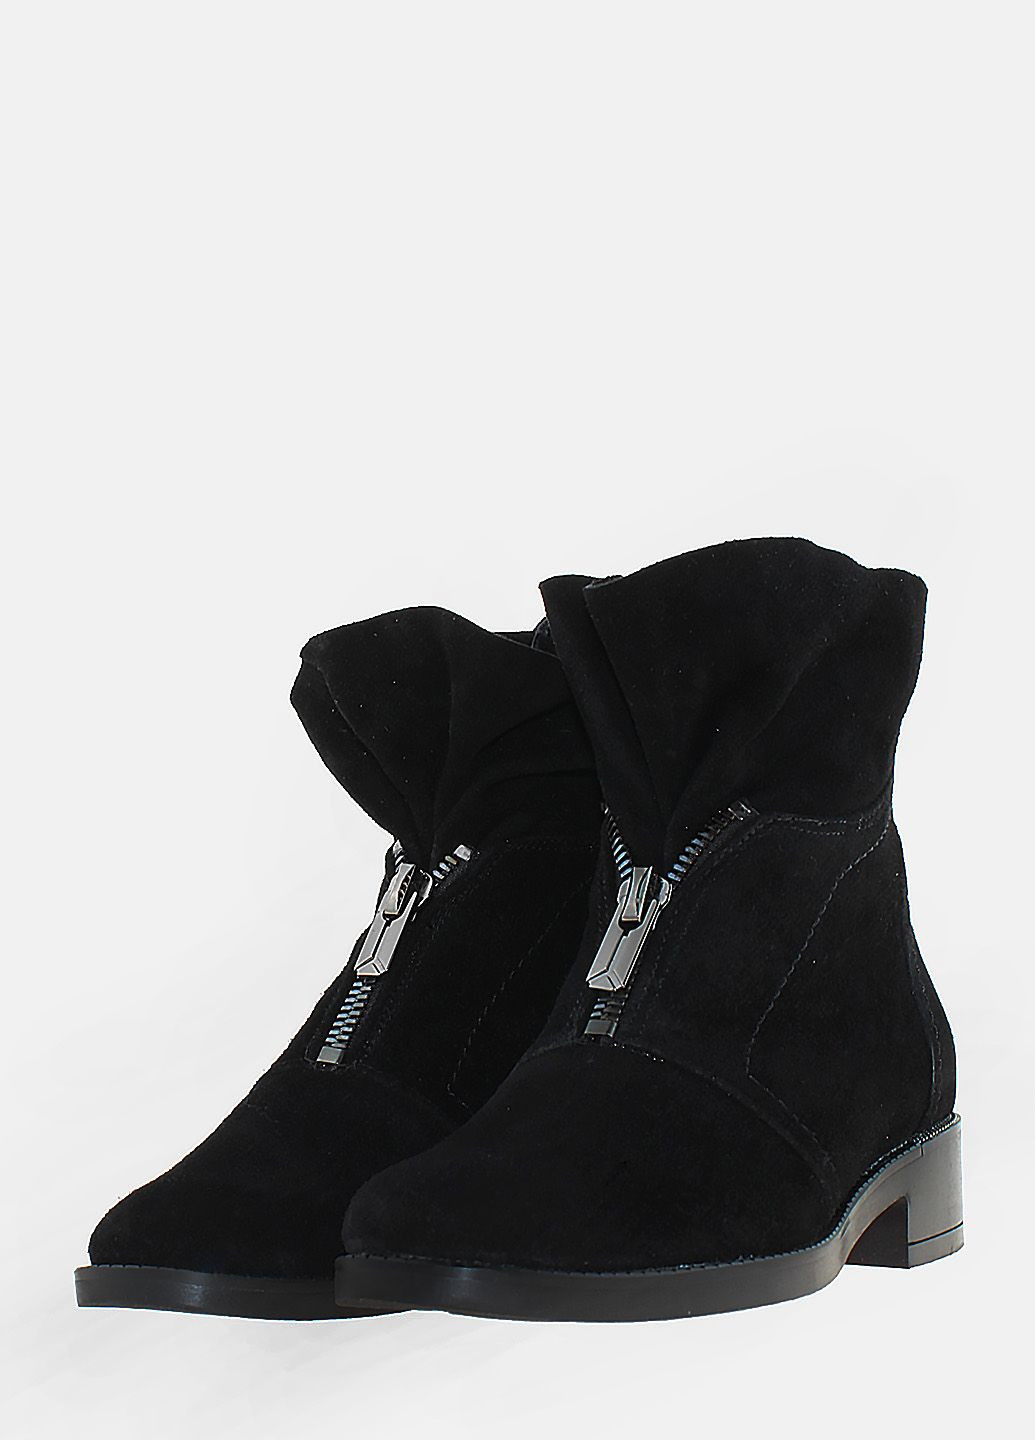 Зимние ботинки rot203-11 черный Olevit из натуральной замши